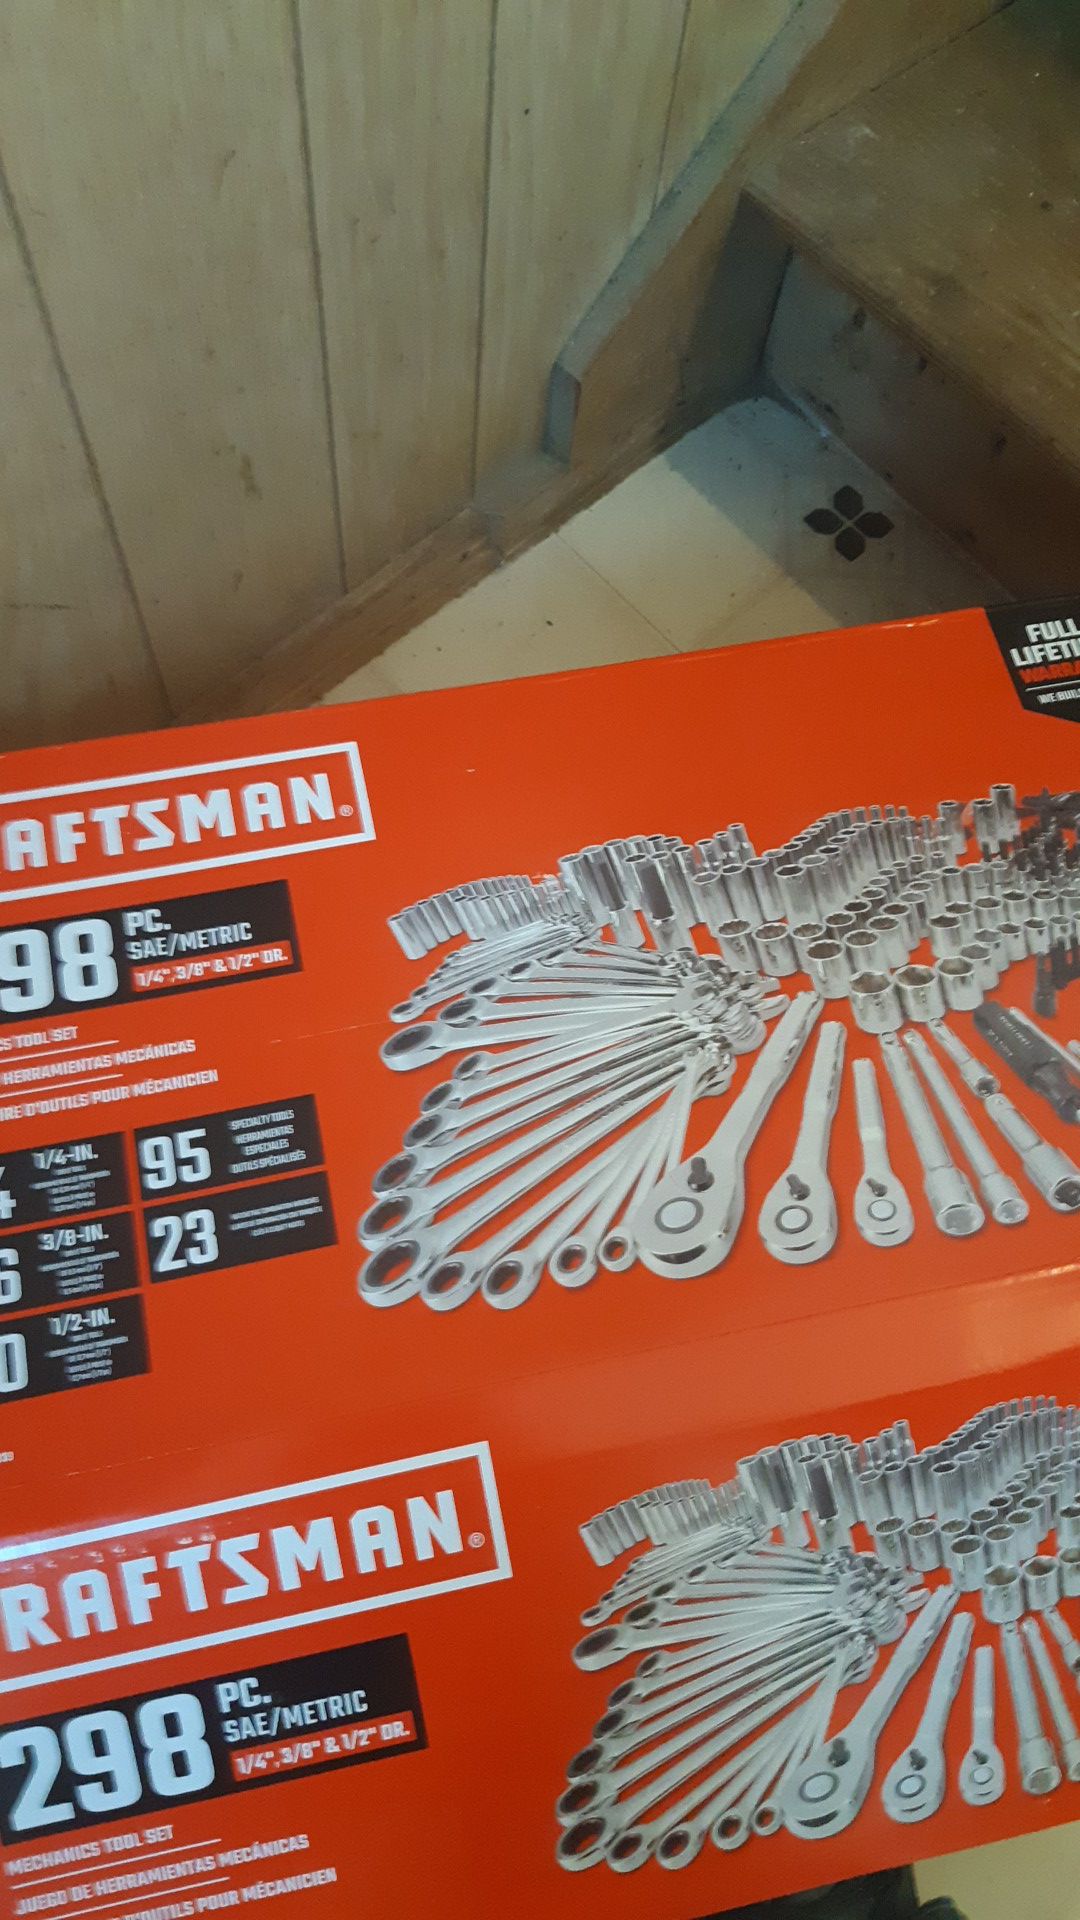 298 PC craftsman tool set